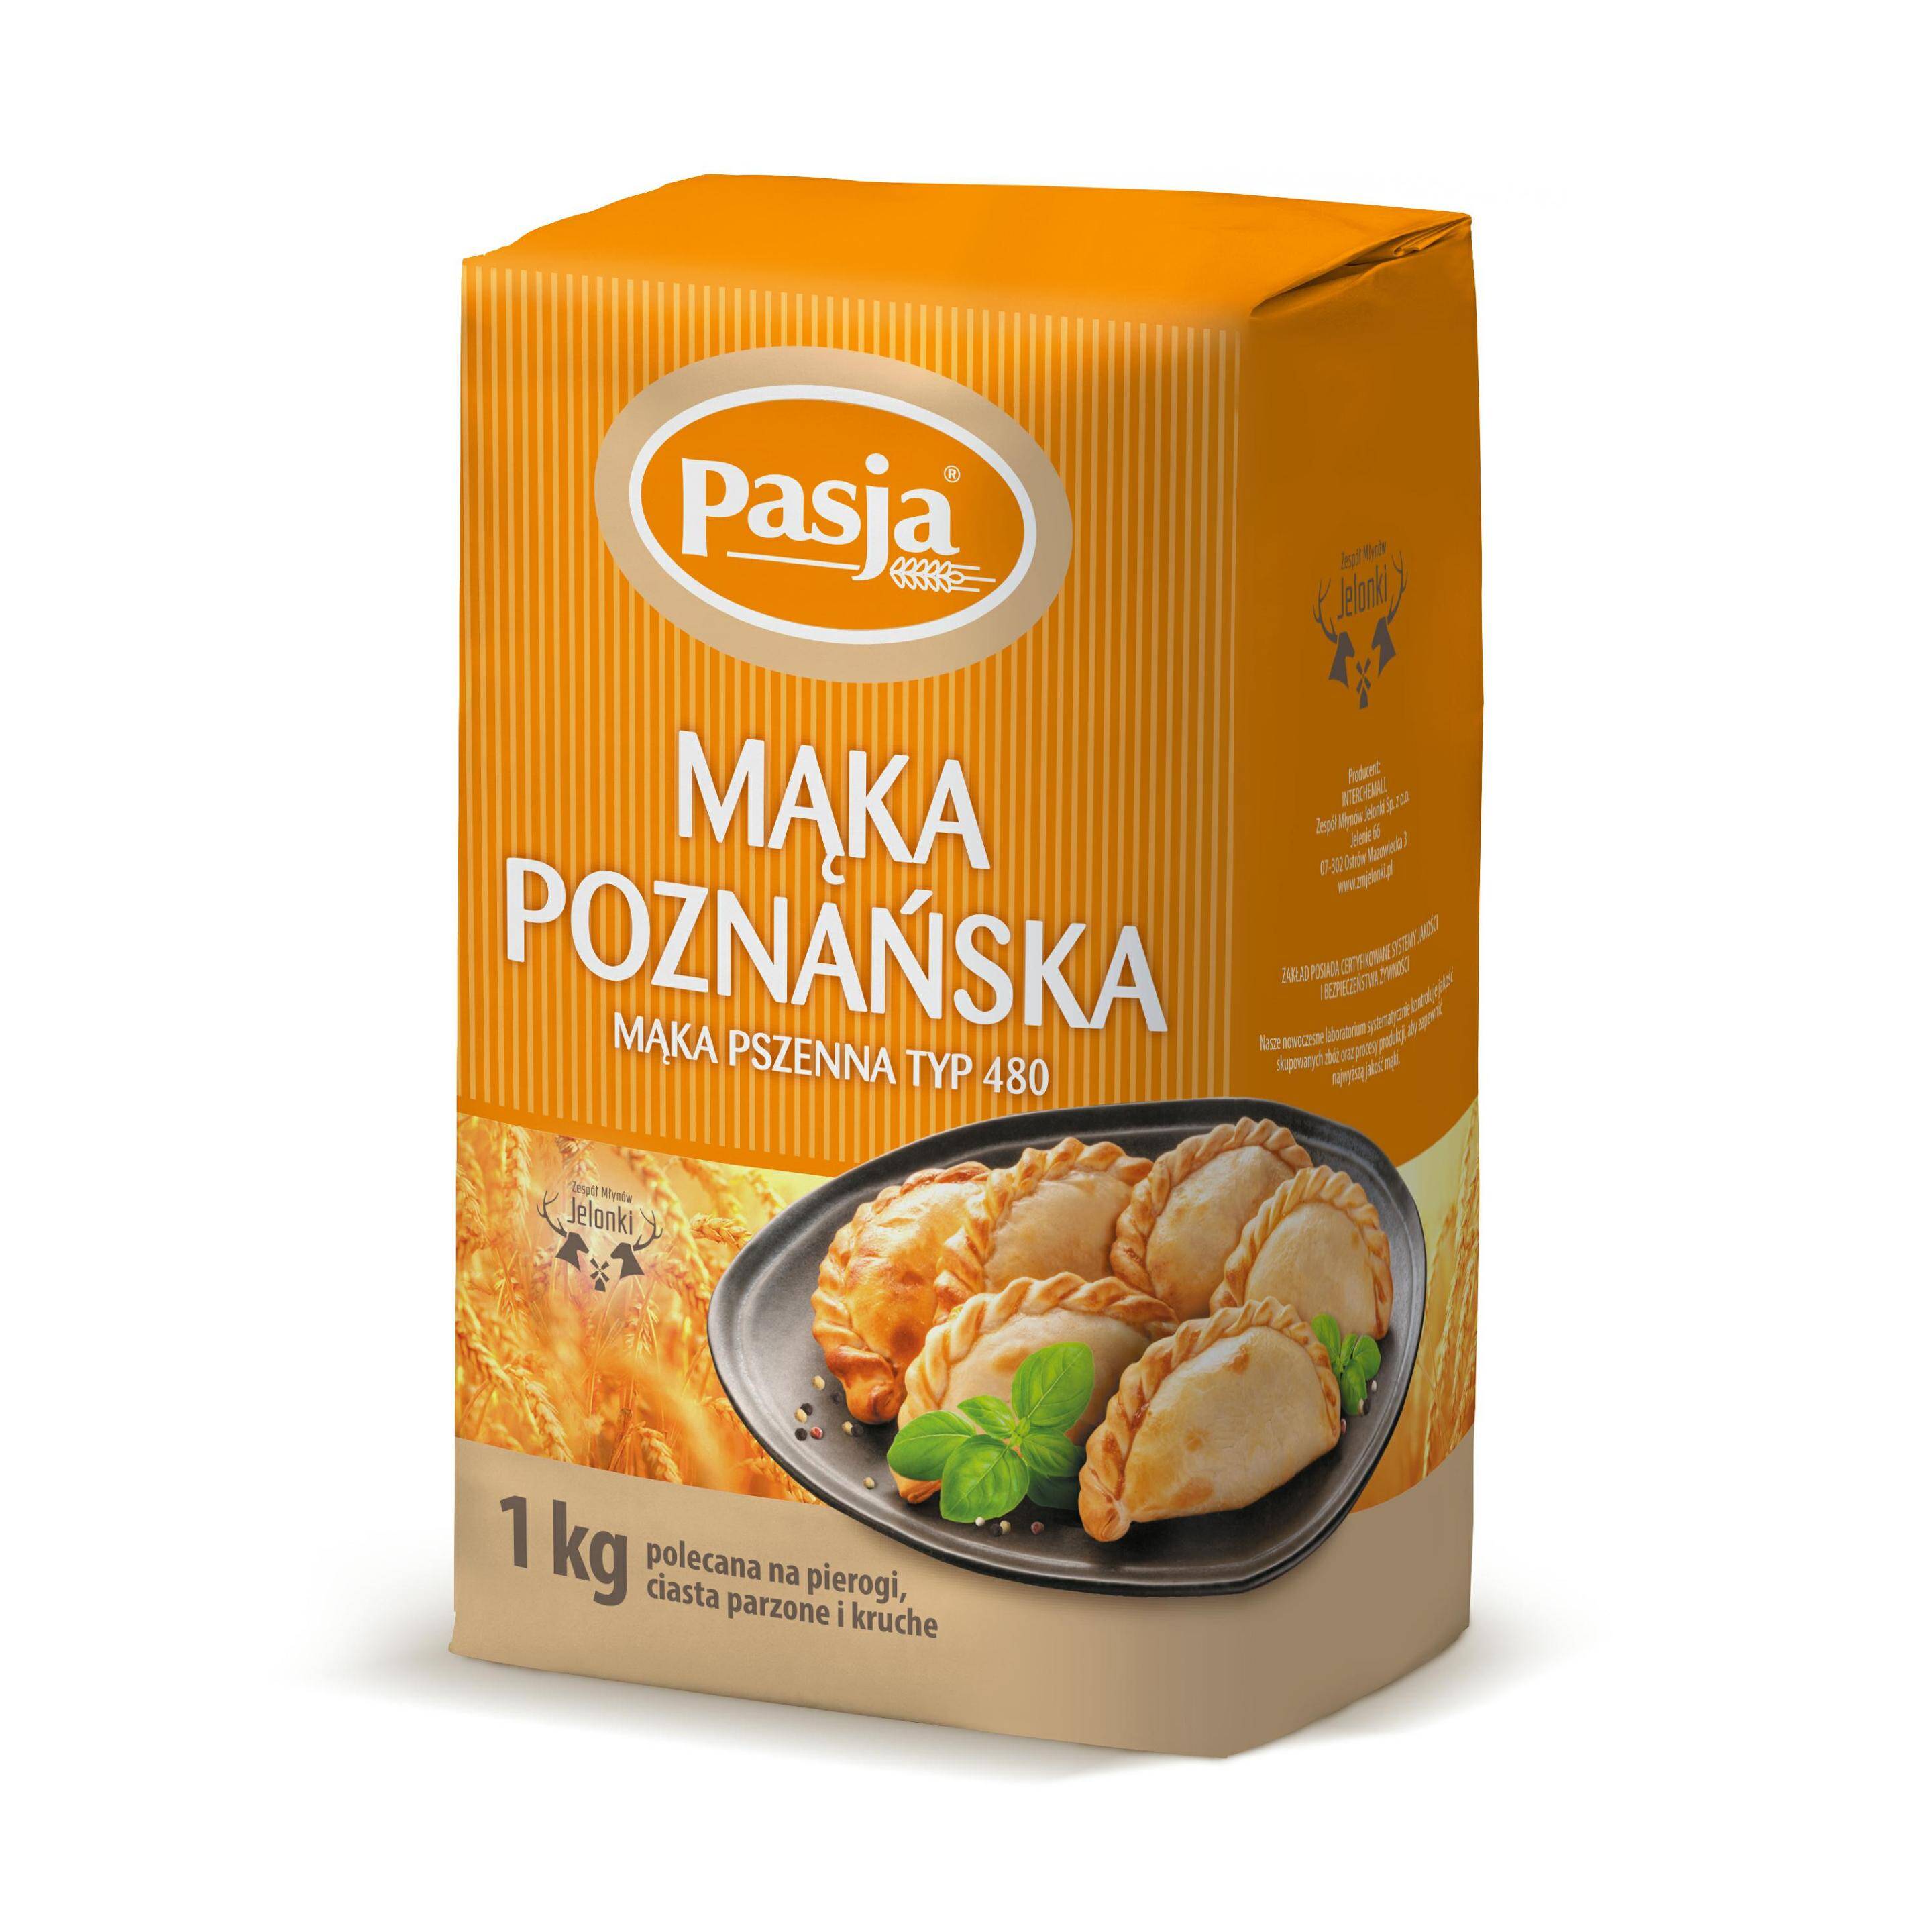 PASJA mąka poznańska 1kg* 10.